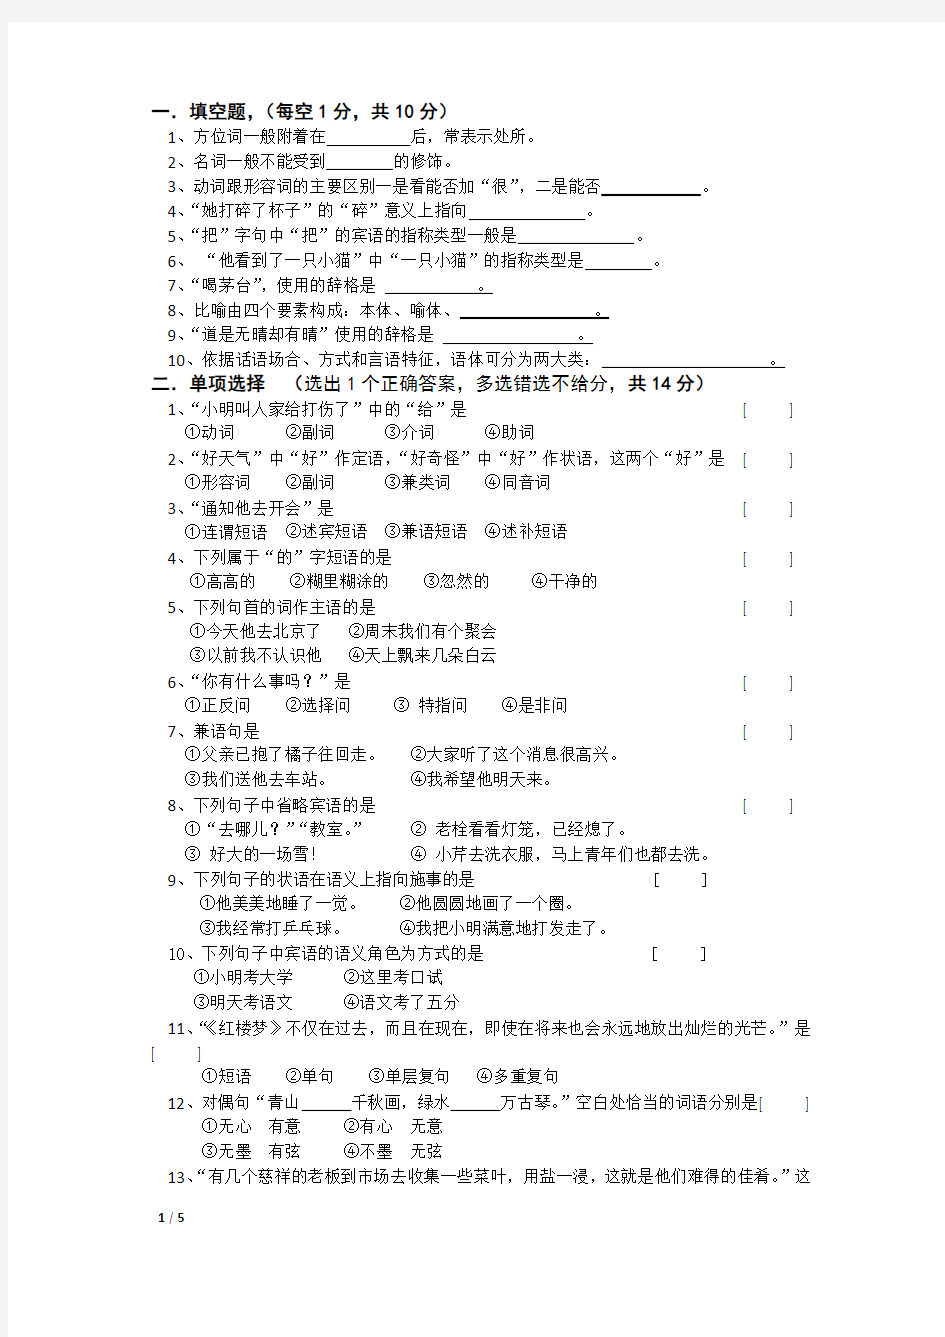 2019年春河北师范大学现代汉语考试题考试卷及答案解析(二)【最新版】